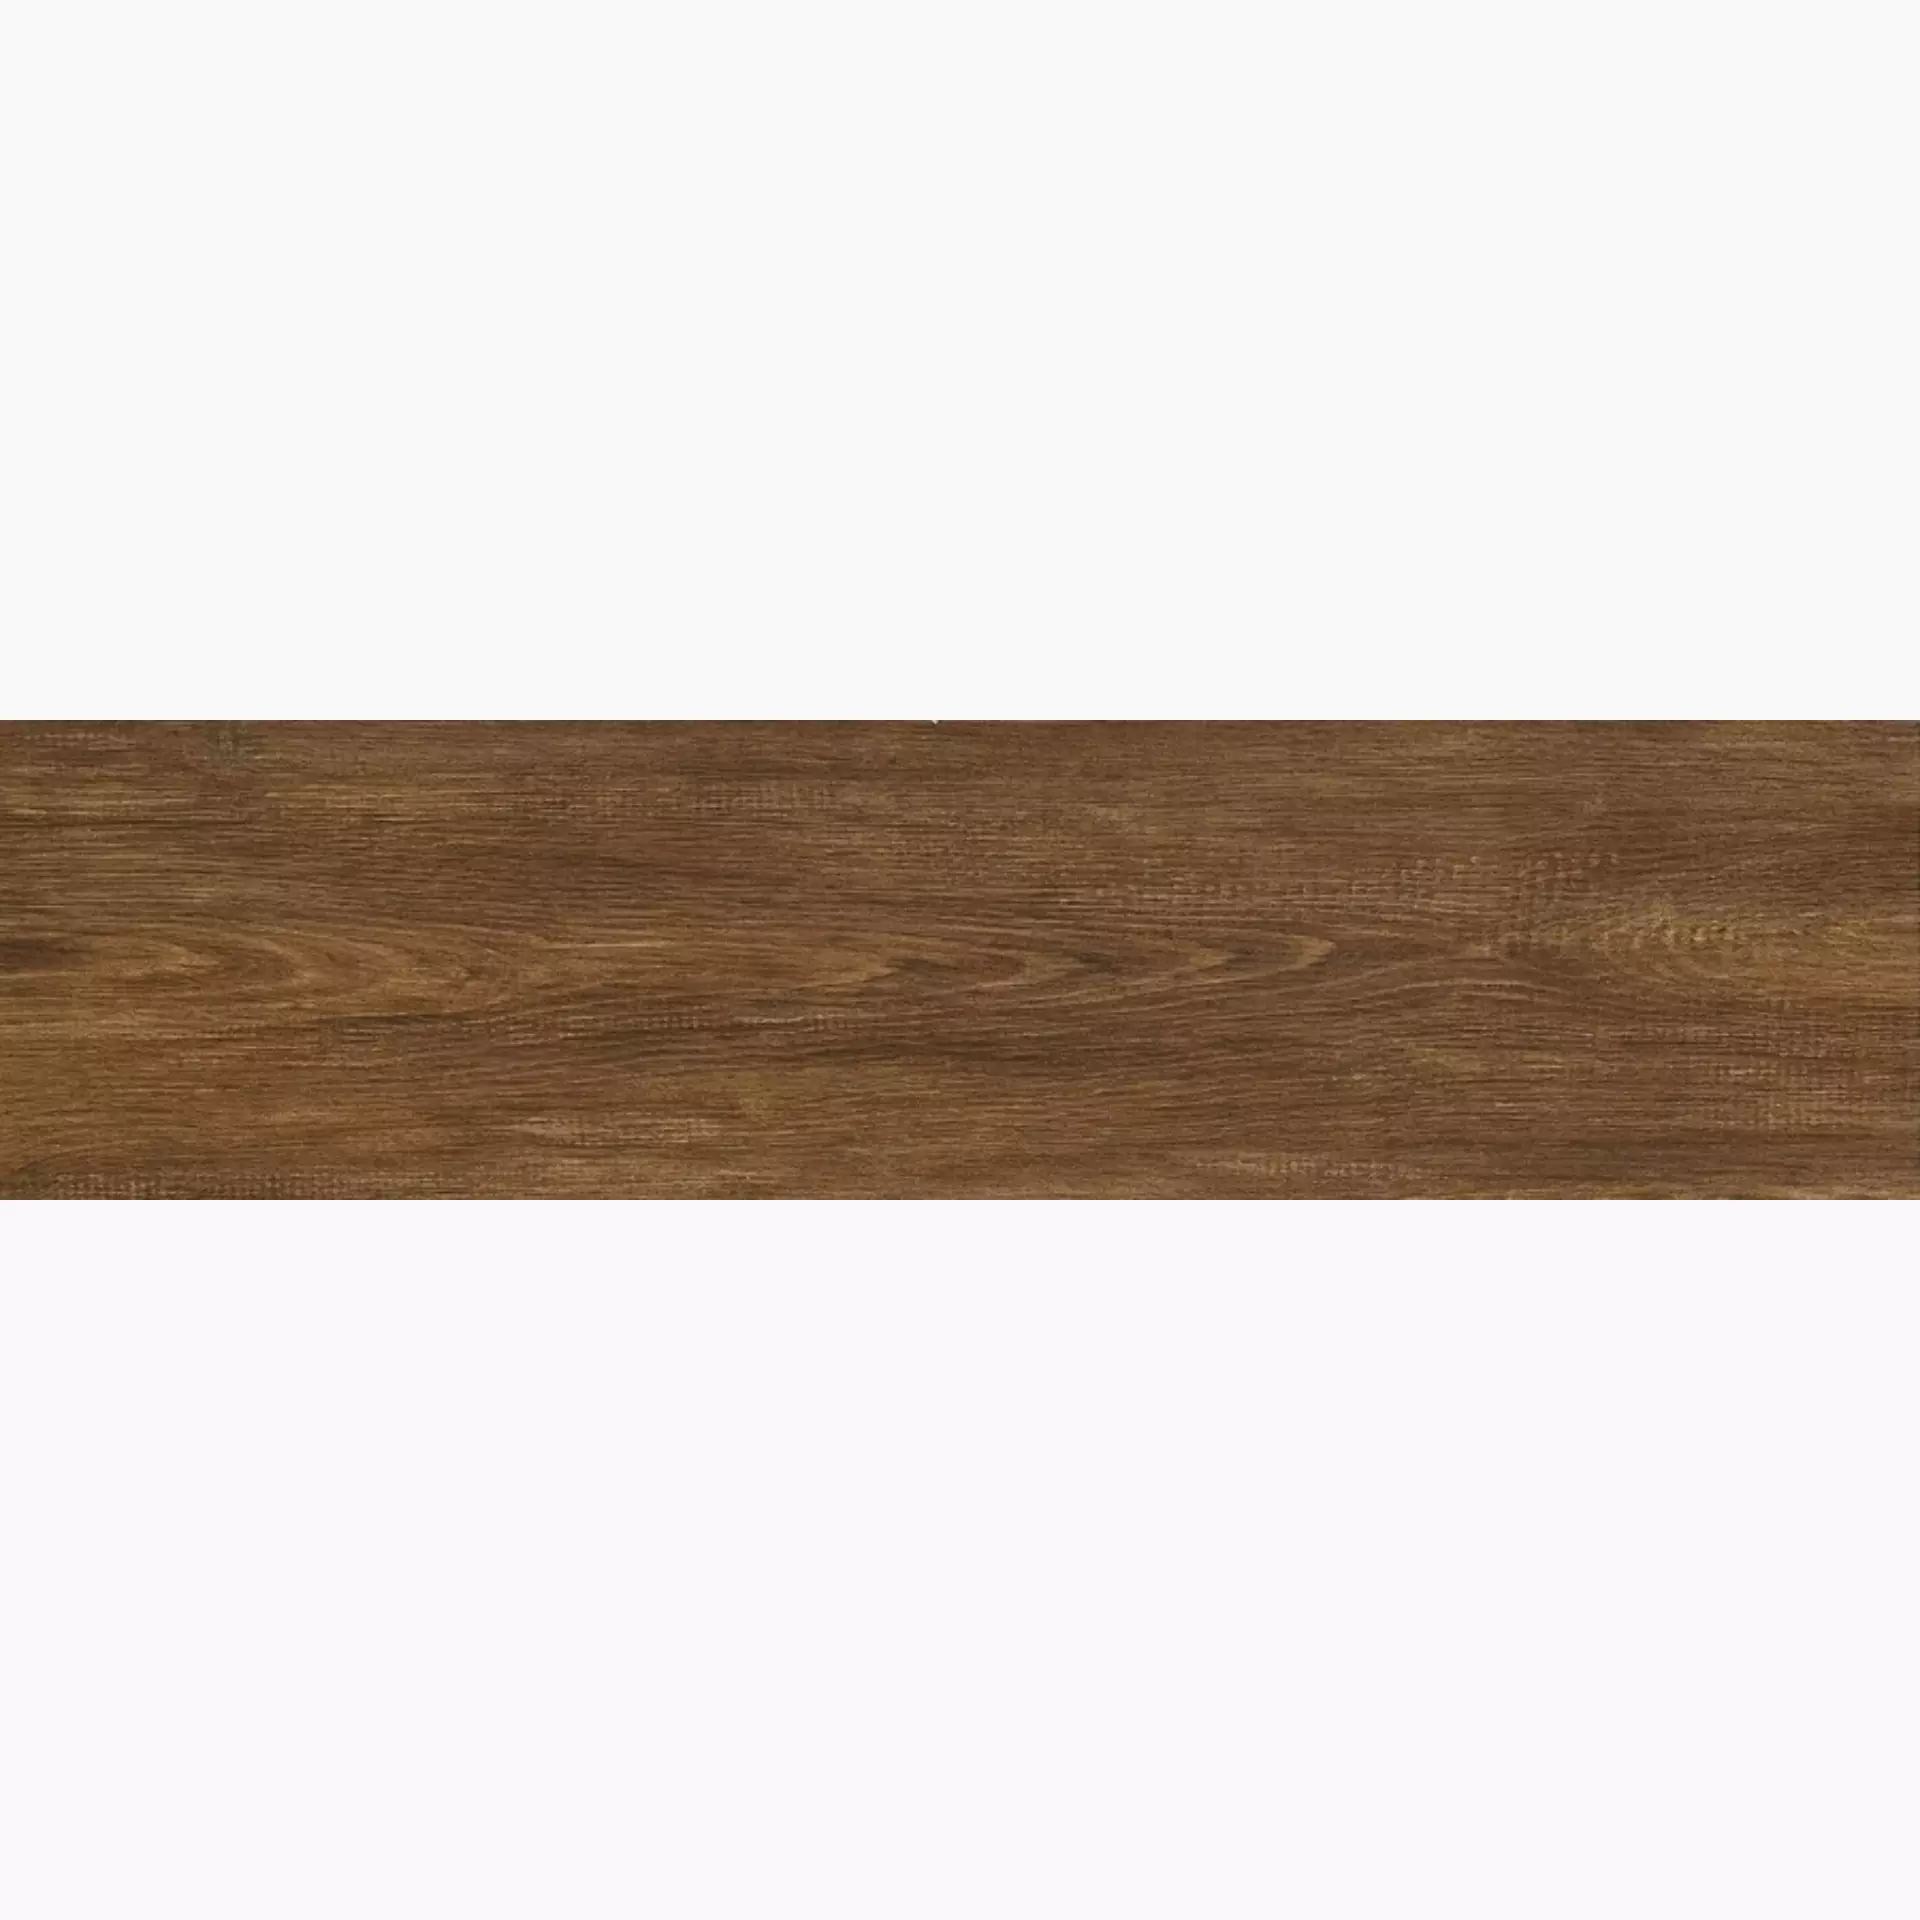 Iris E-Wood Oak Lappato Vintage 897021 22,5x90cm 9mm